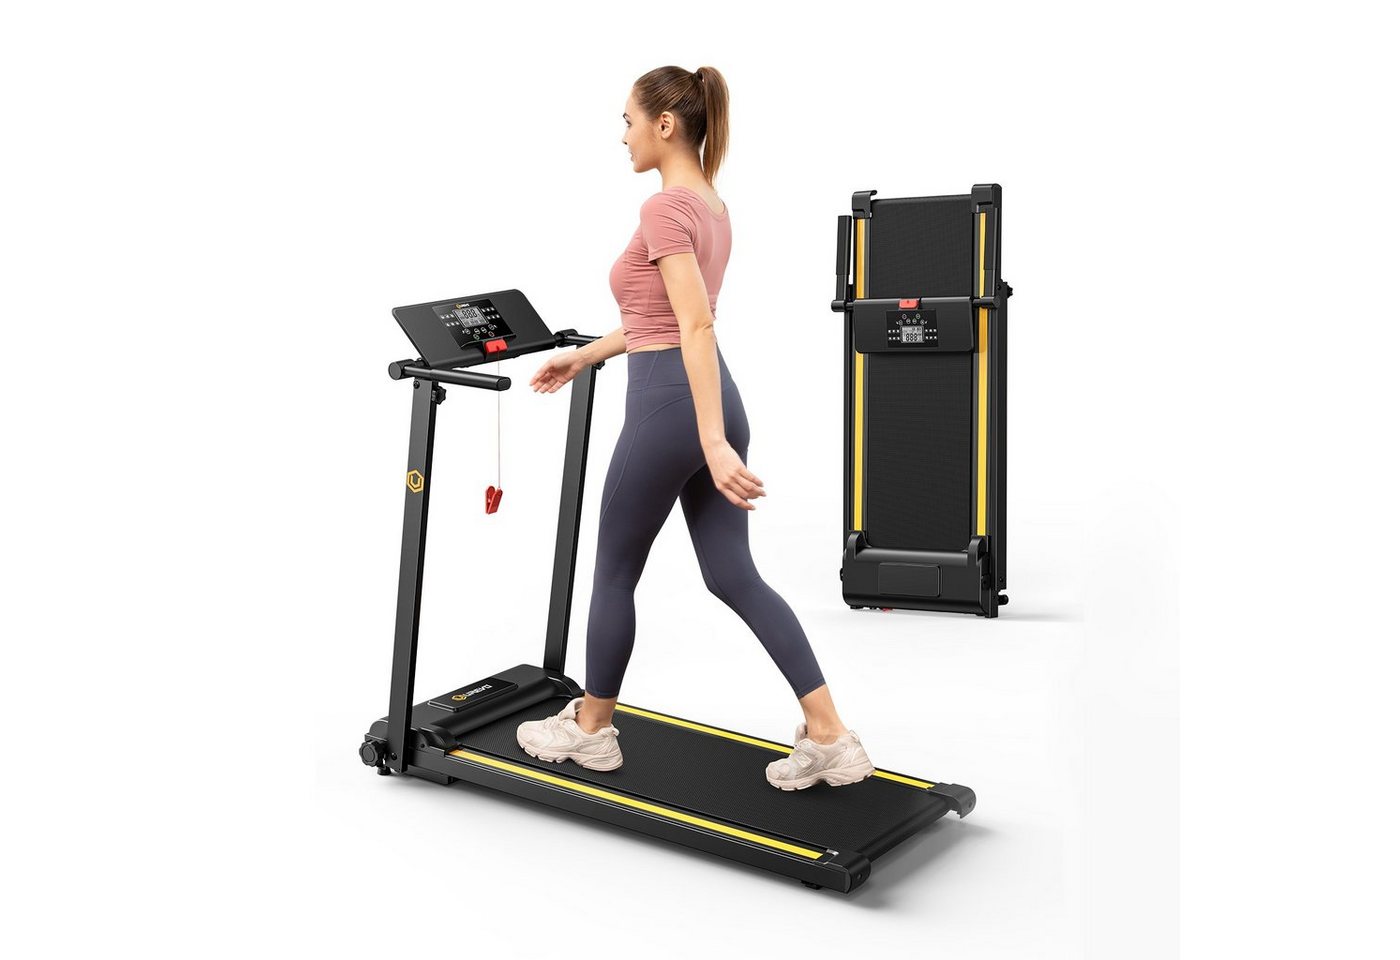 REDOM Laufband Profi Elektrisches Laufband Fitness Treadmill Sports Zuhause 1-10 km/h (Trainingspfade klappbar und kompakt verstaubar, Halterung für Handy und Pad, mit 12 Programs, UREVO), Walking pad für Zu hause von REDOM